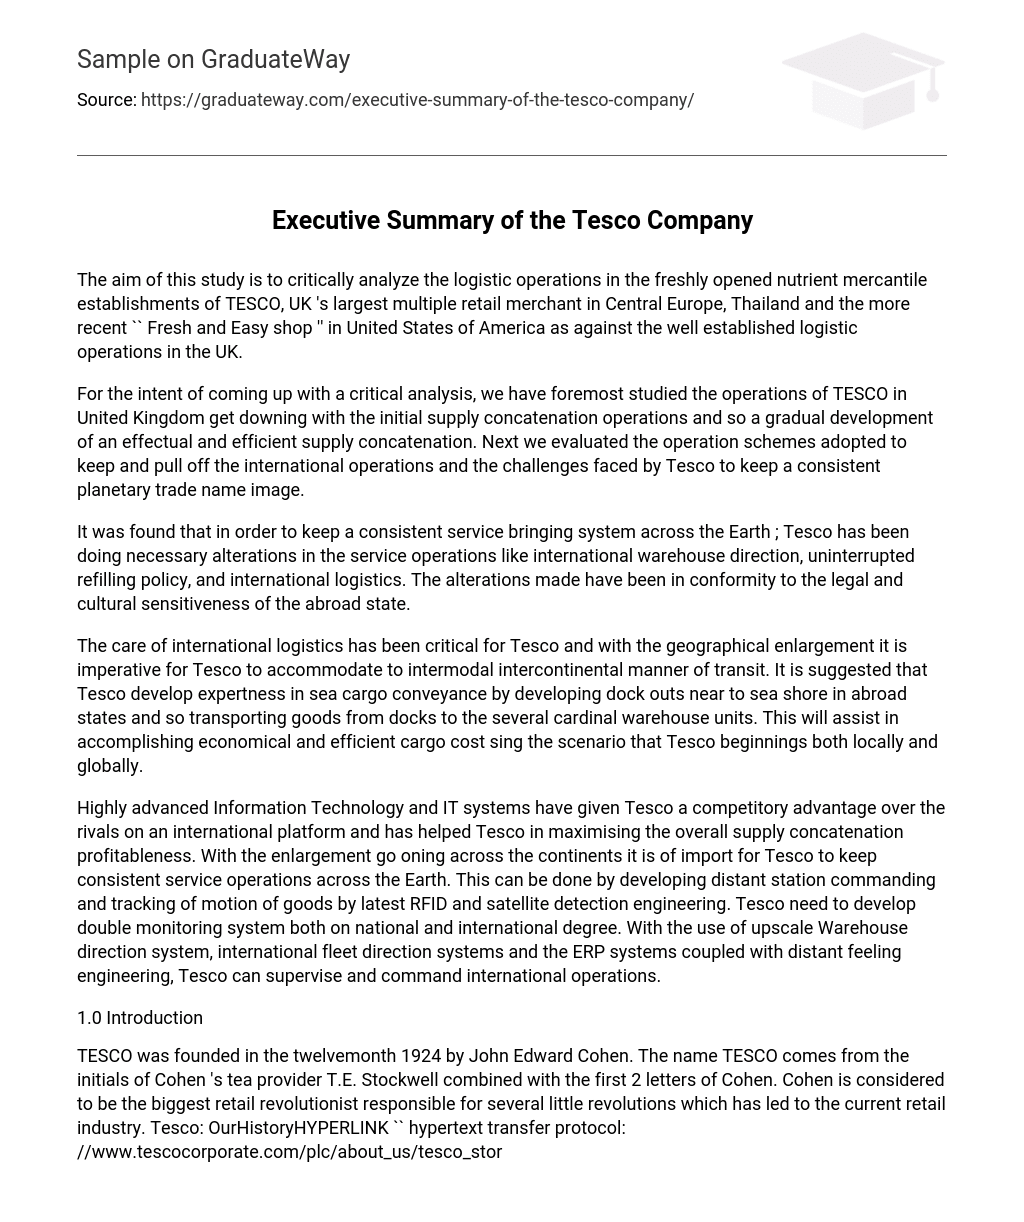 Executive Summary of the Tesco Company